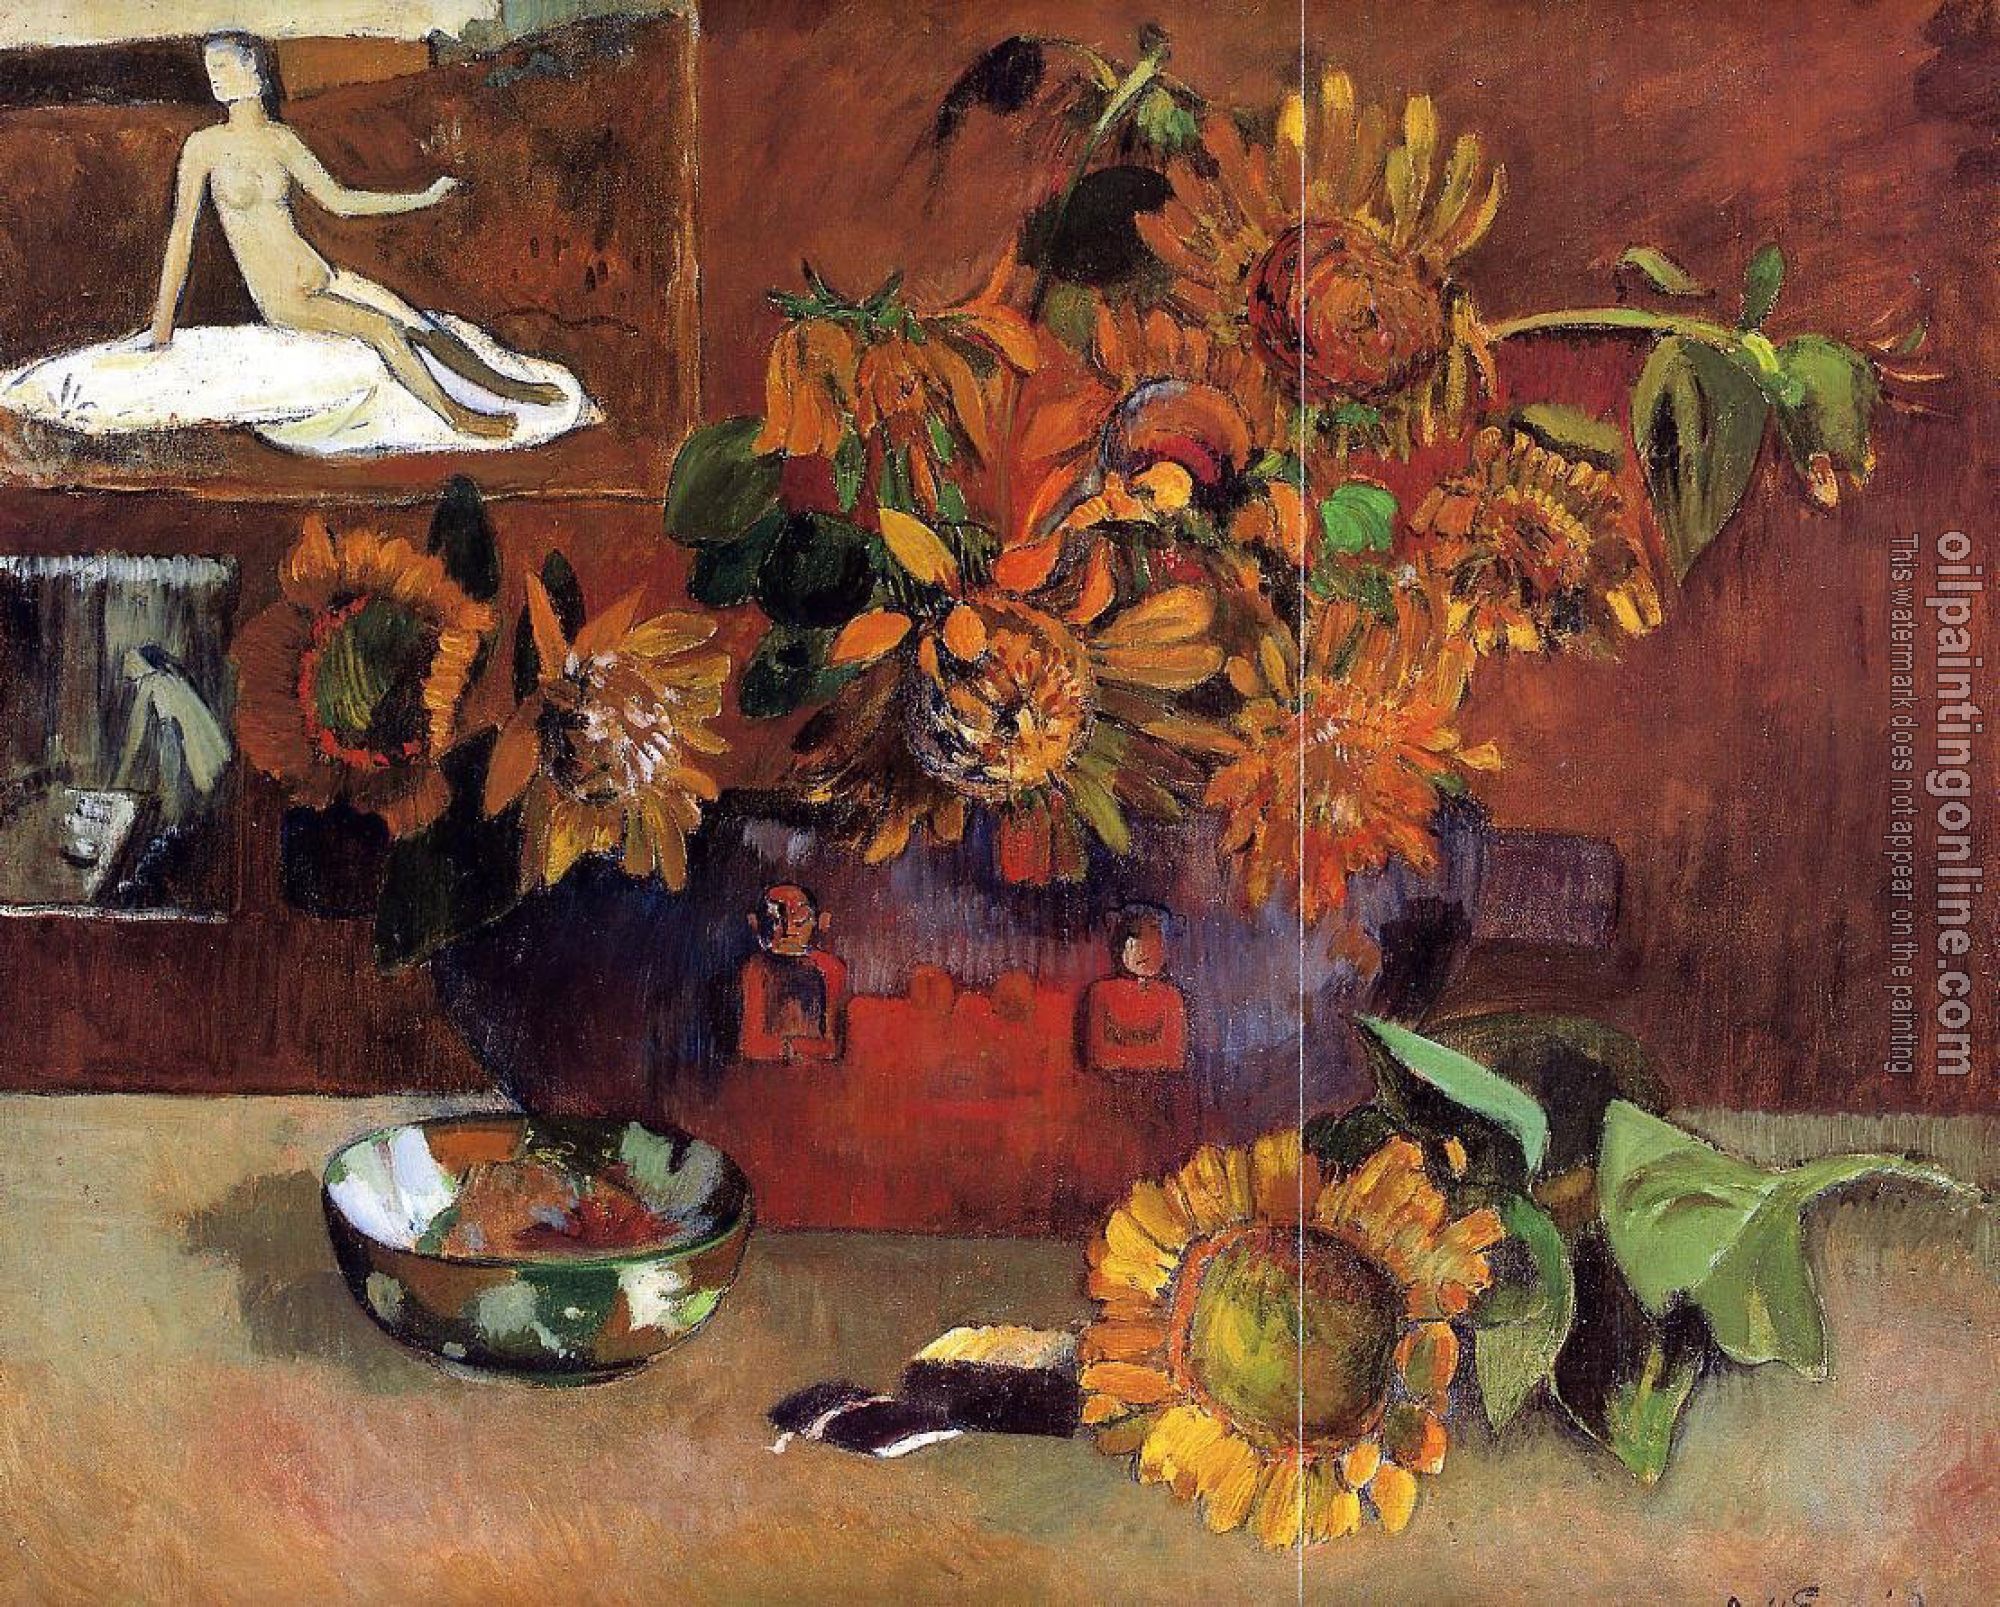 Gauguin, Paul - Still Life with L'Esperance